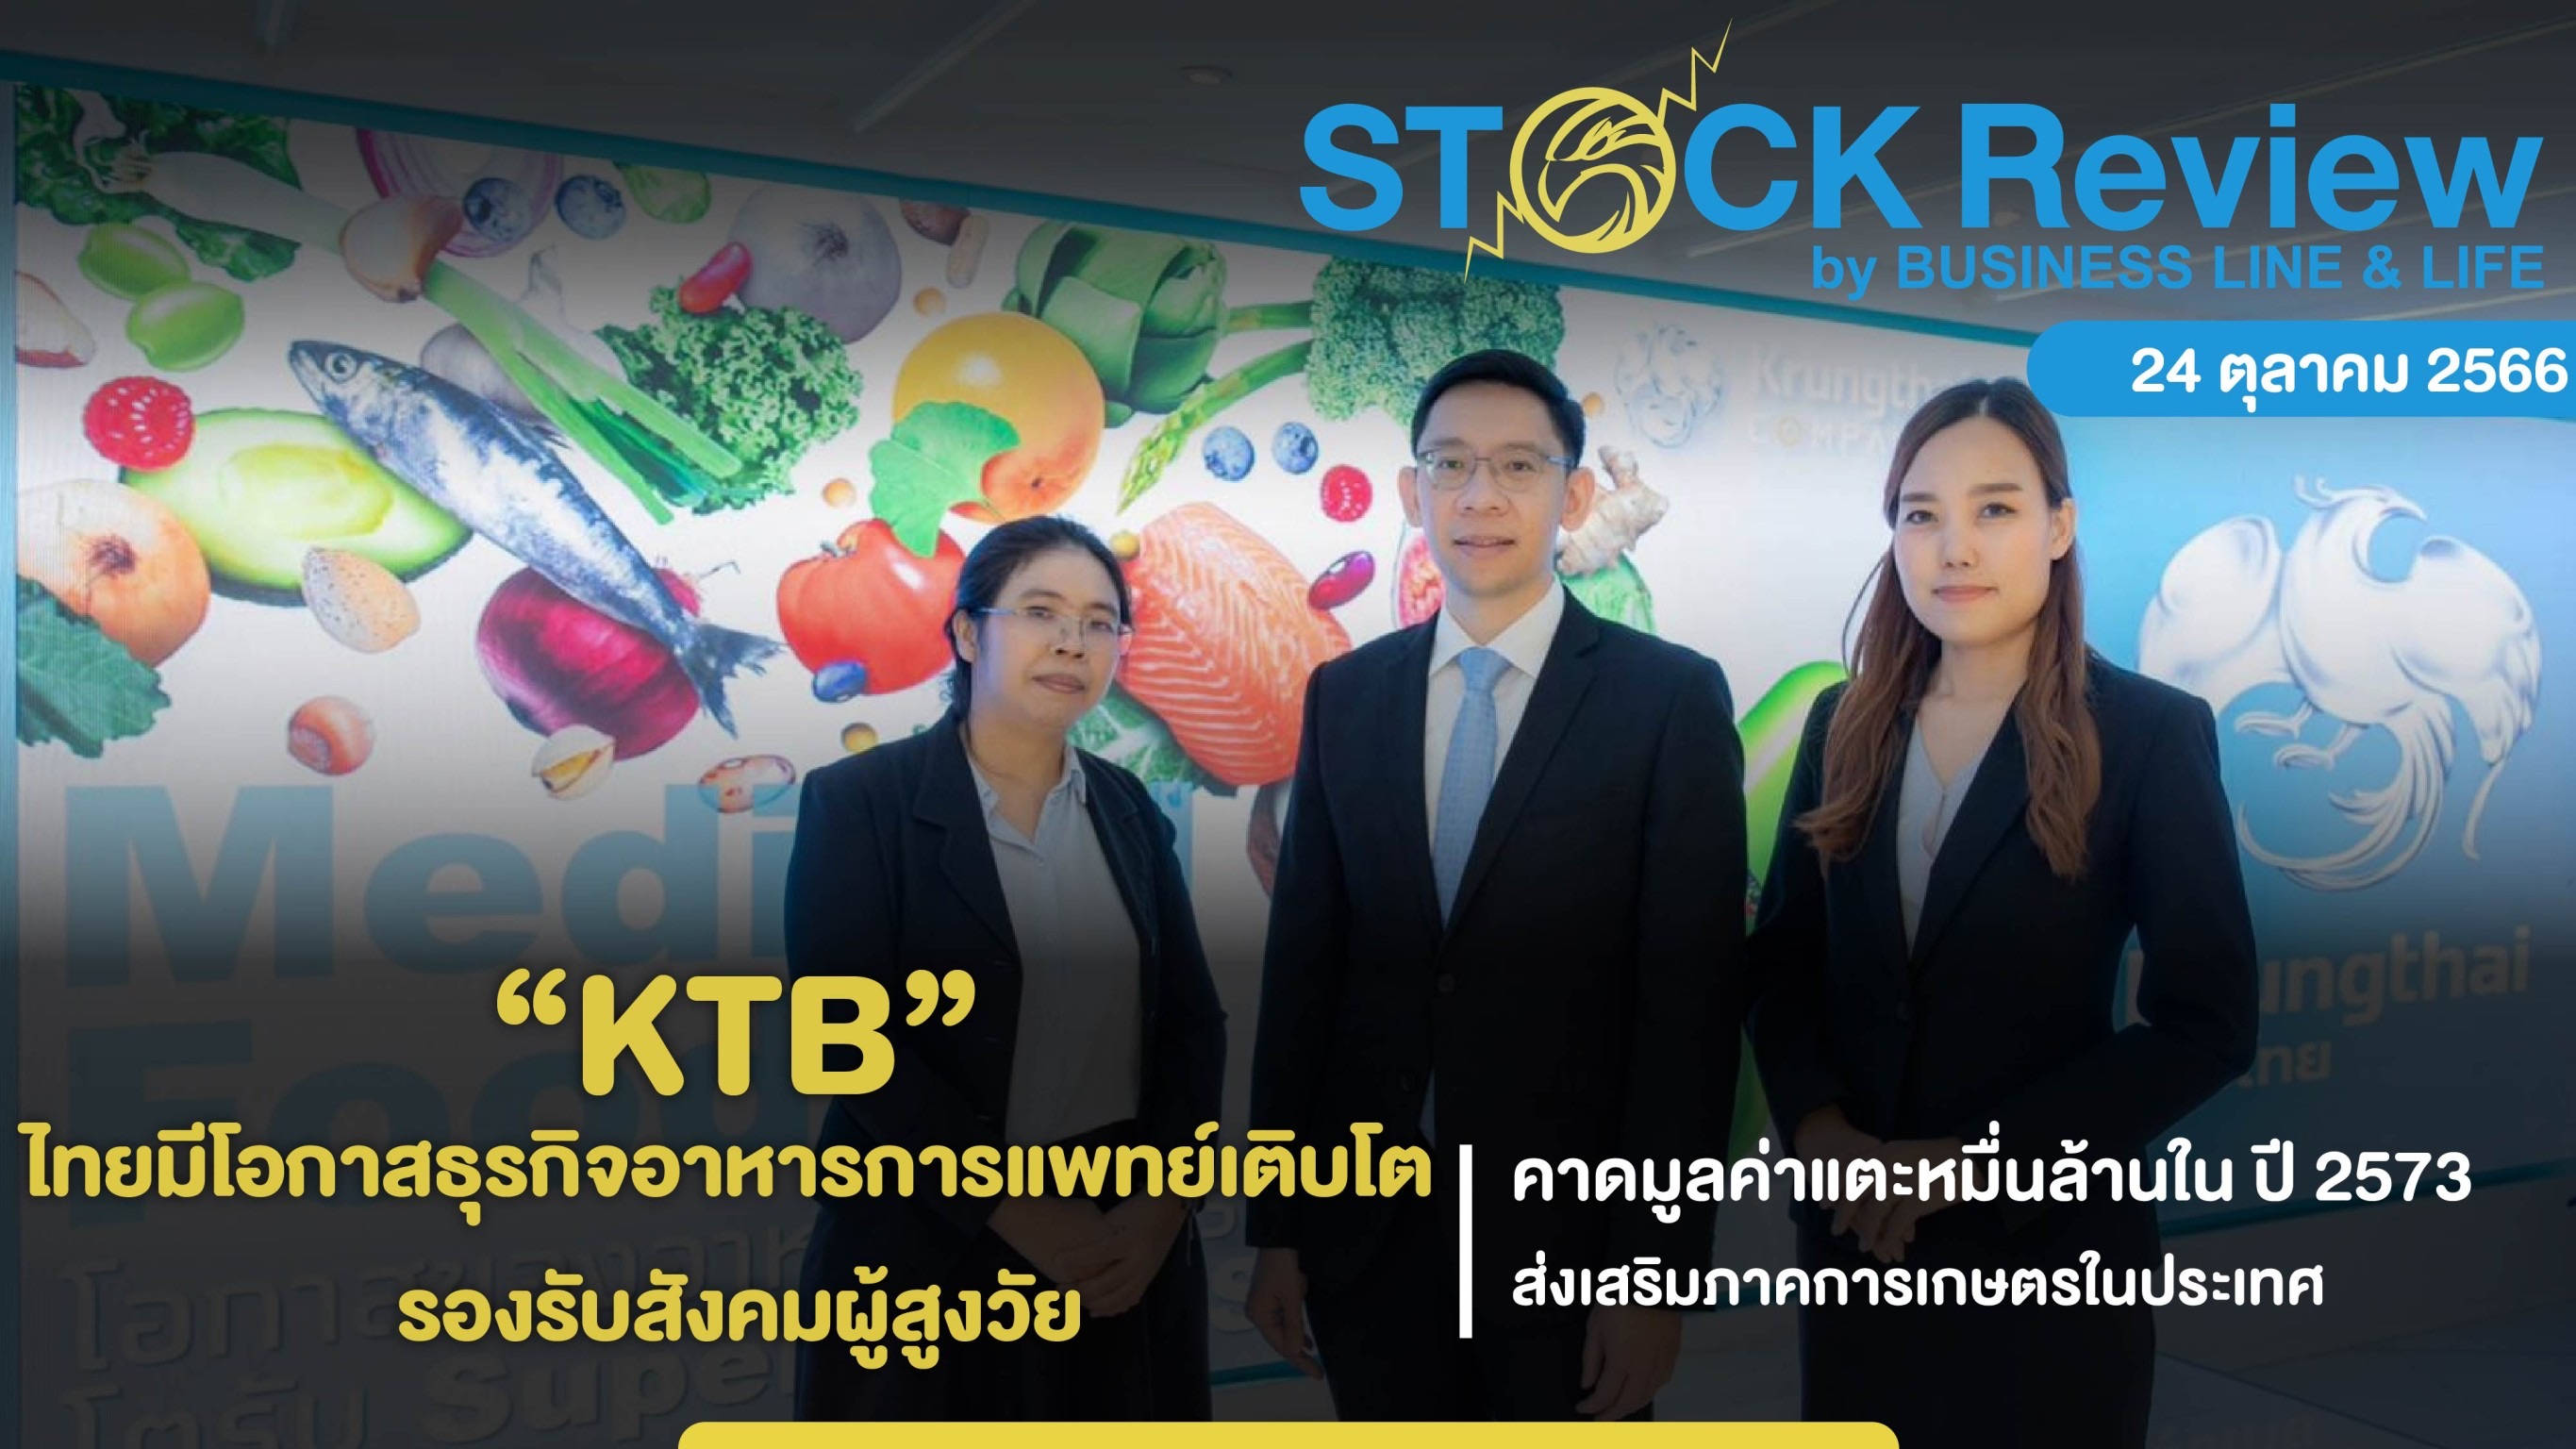 “กรุงไทย” เผยไทยมีโอกาสธุรกิจอาหารการแพทย์เติบโต รองรับสังคมผู้สูงวัย